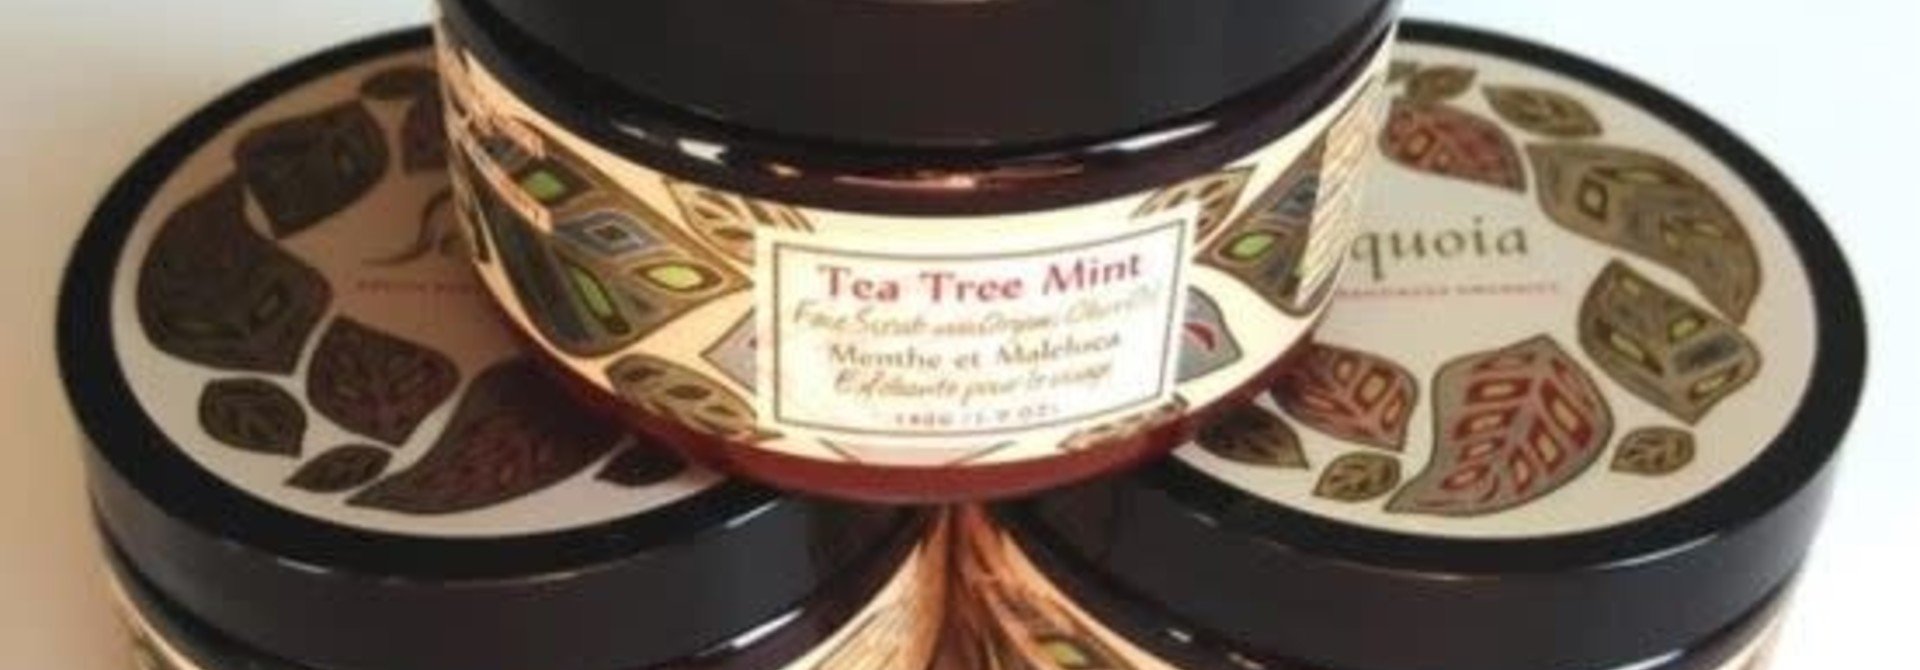 Sequoia Tea Tree Mint Face Scrub -5oz